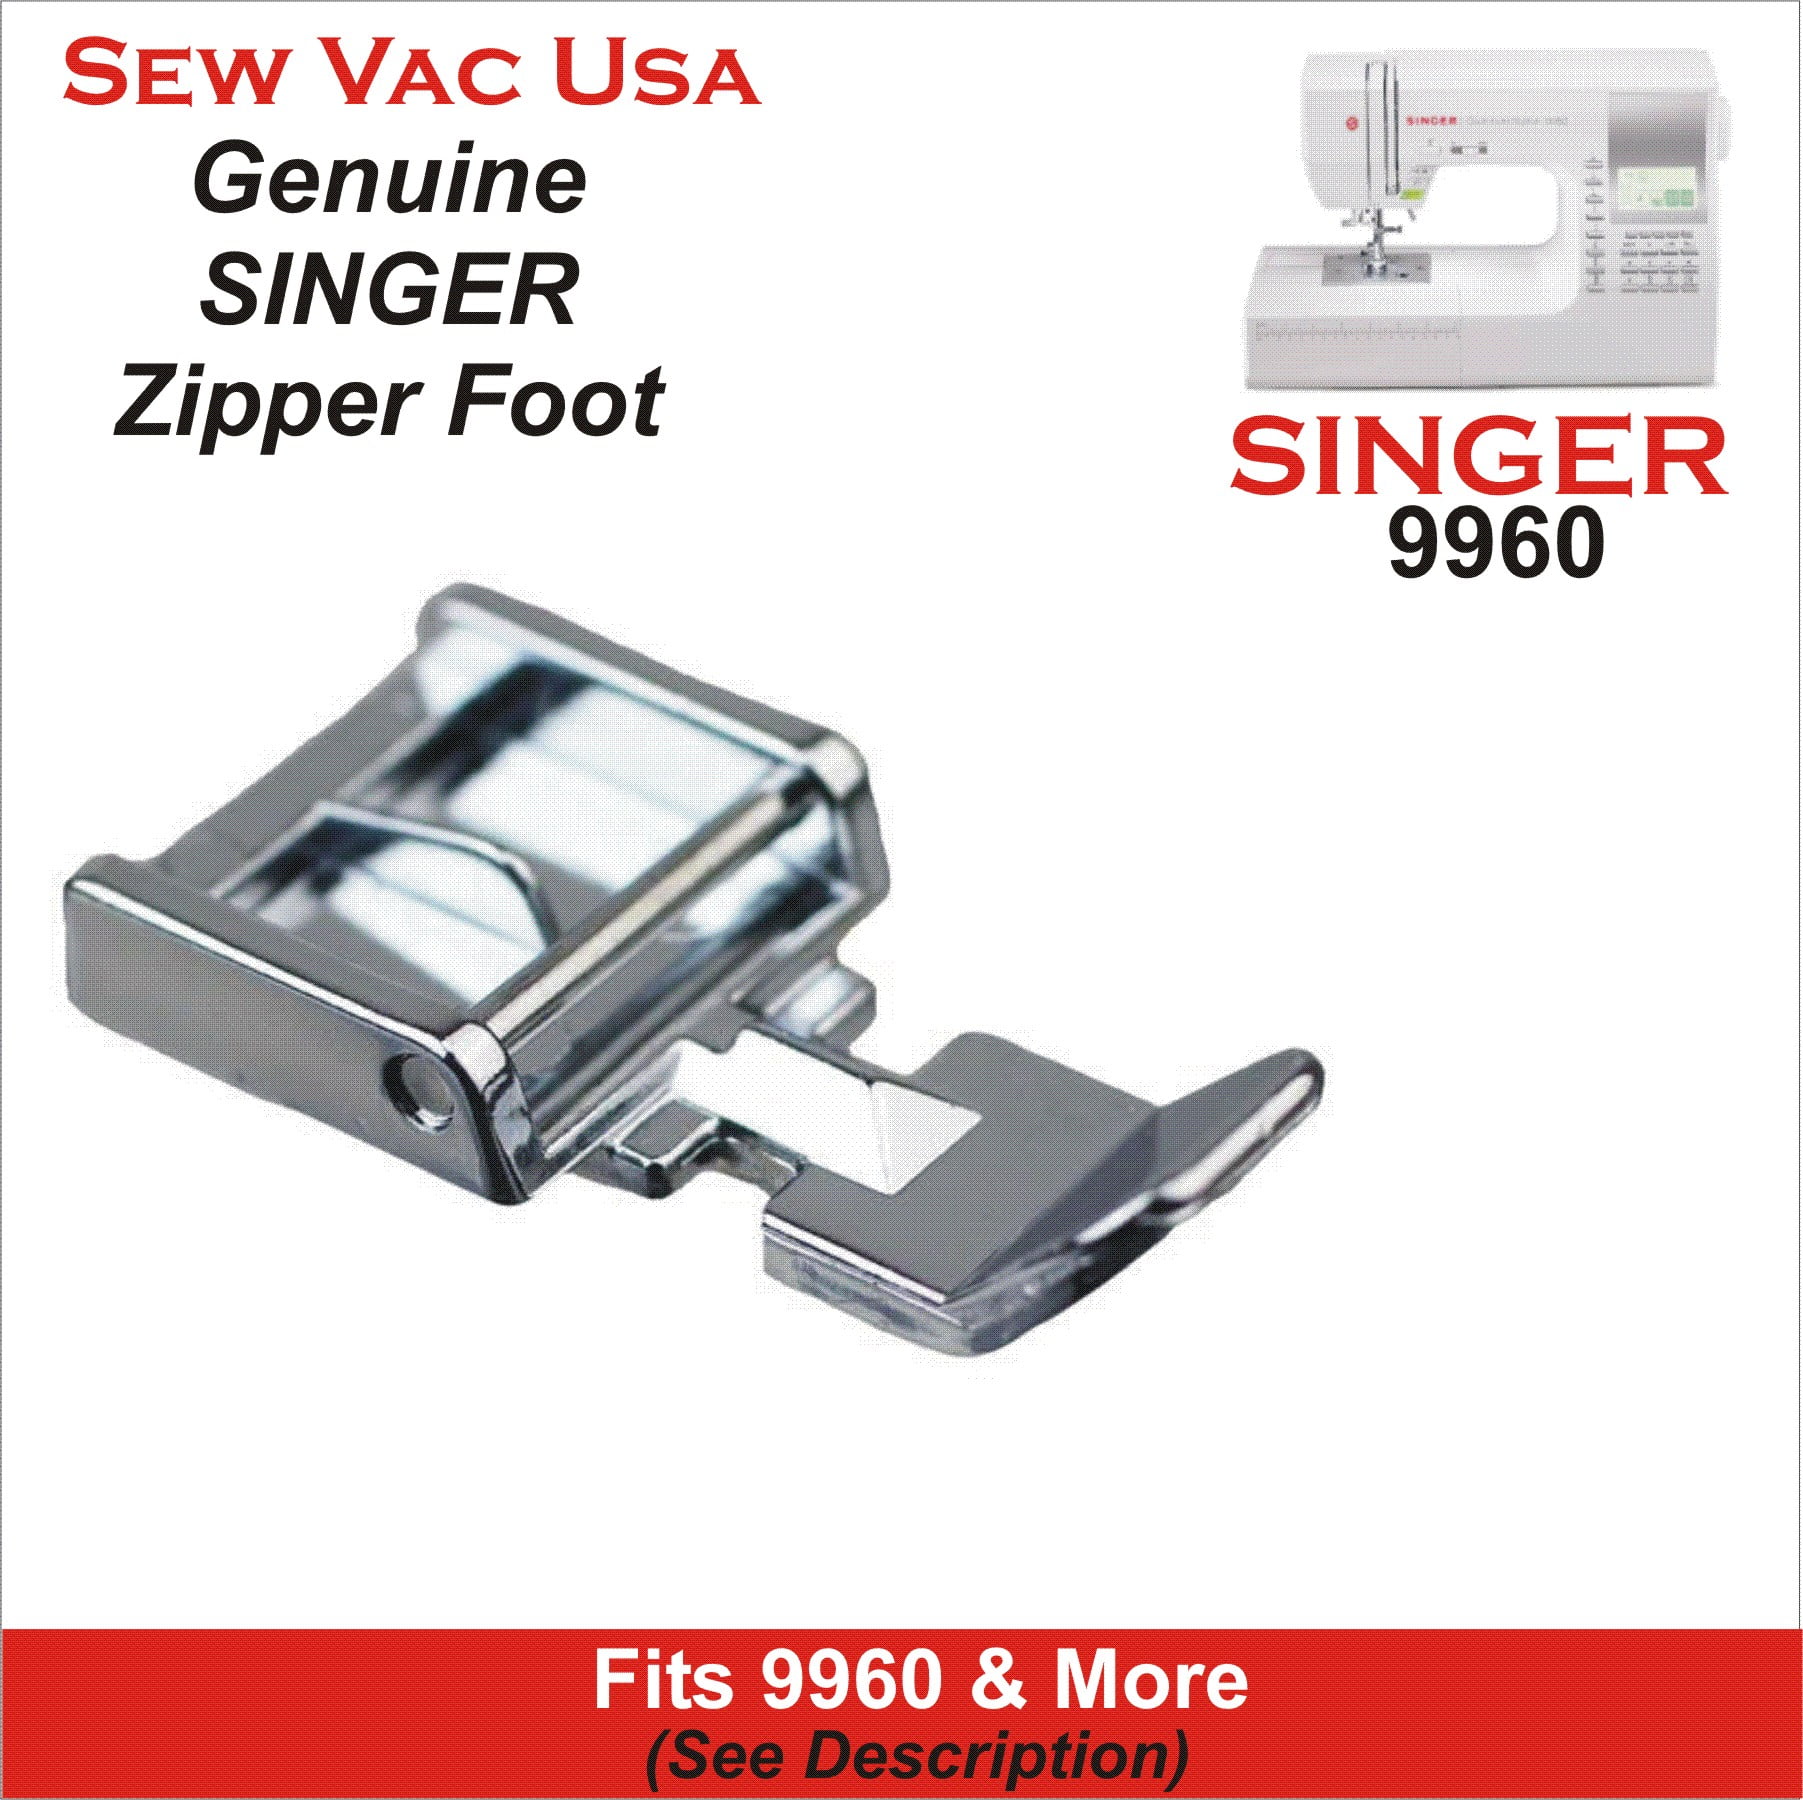 Singer 9960 Zipper Foot Fits Models In Description